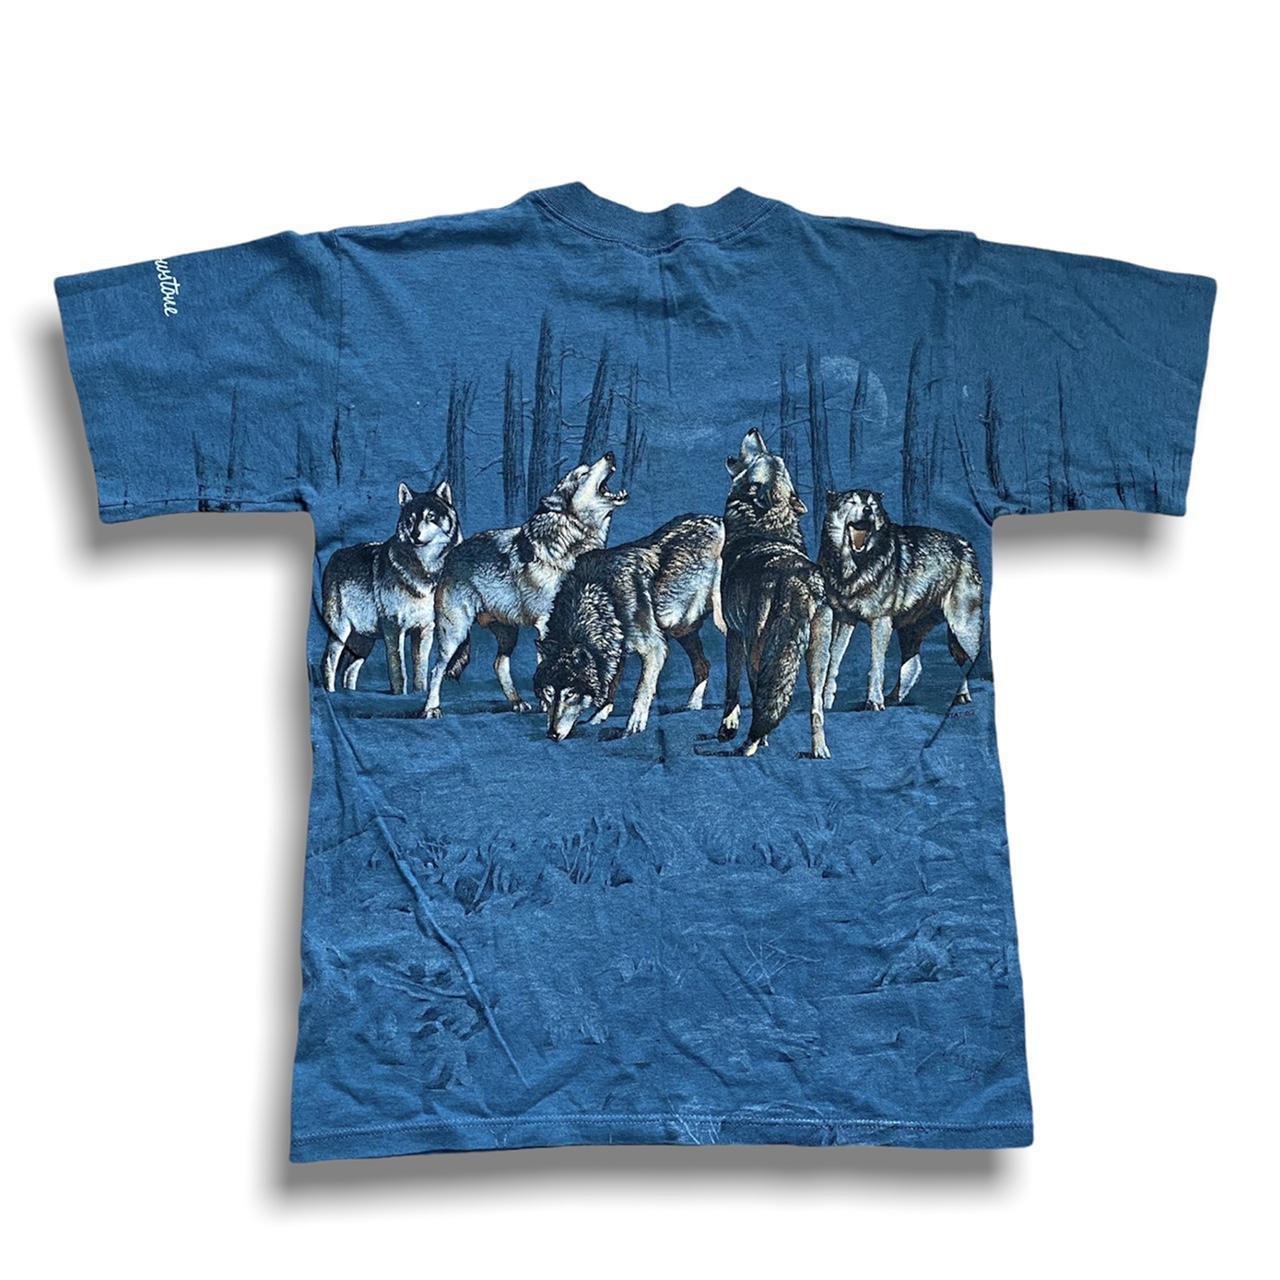 Habitat Men's Blue and Grey T-shirt | Depop